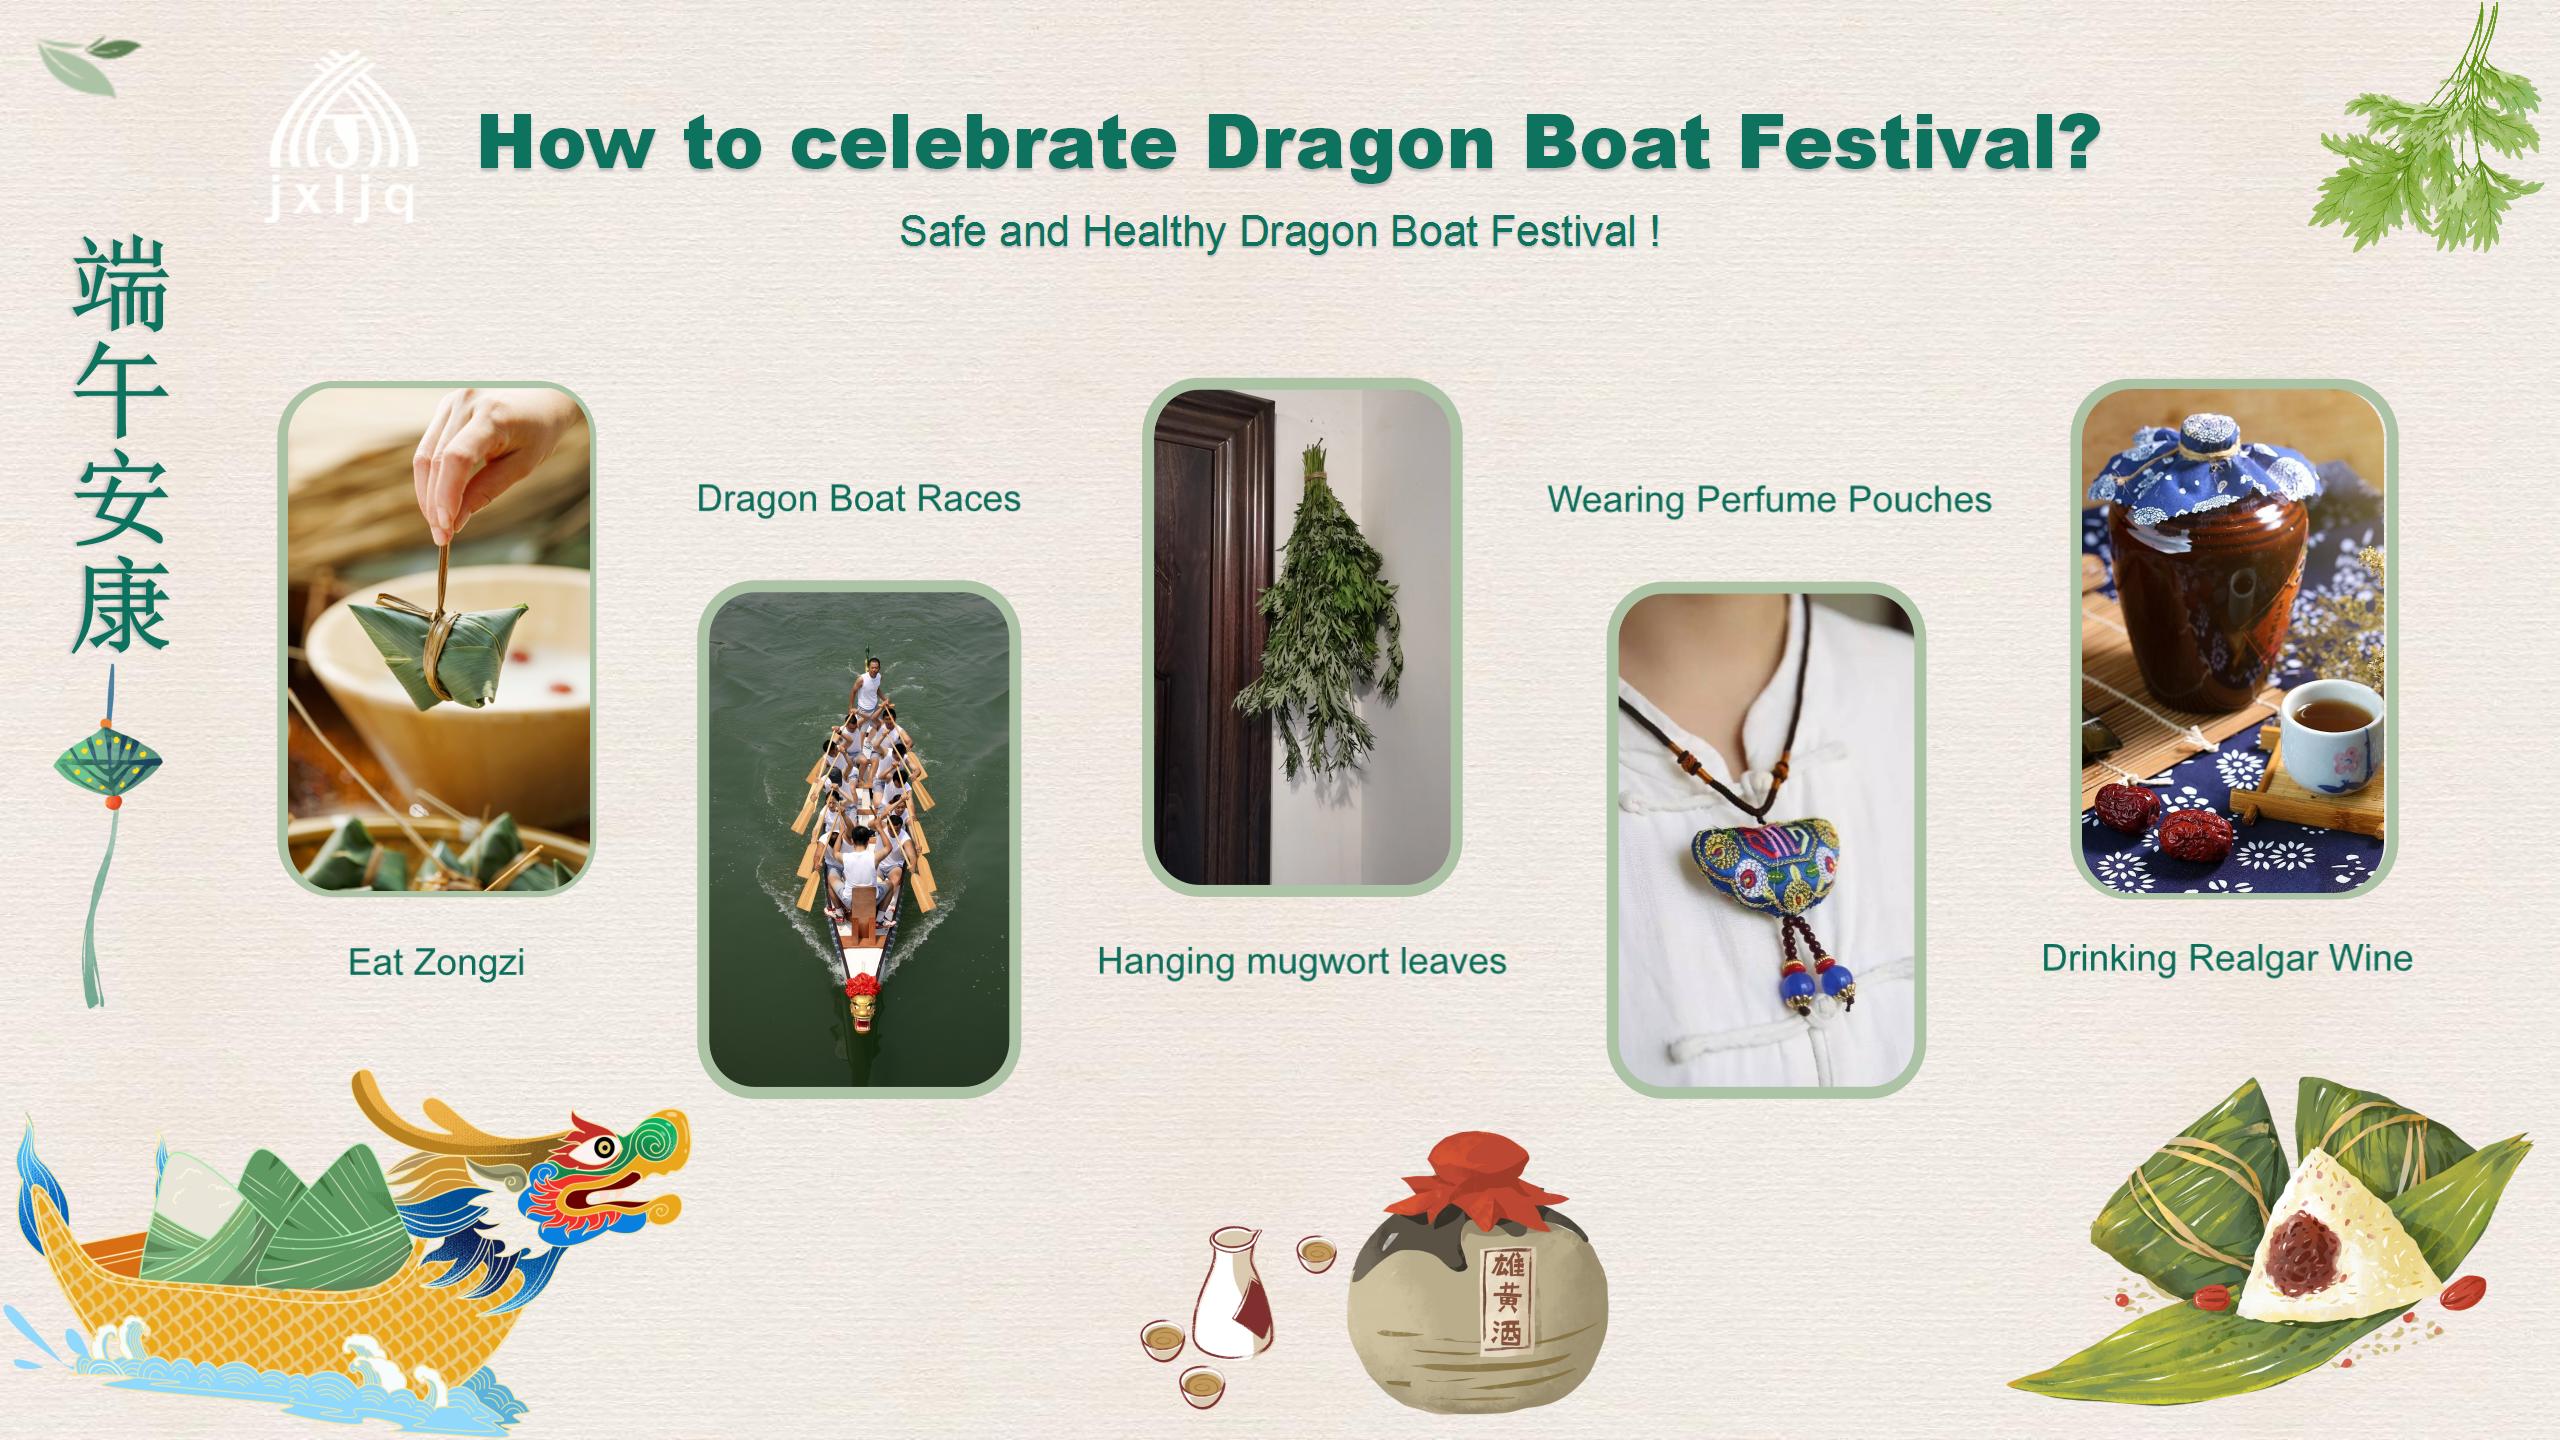 Dragon Boat Festival 2022: Giunsa nato kini pagsaulog?